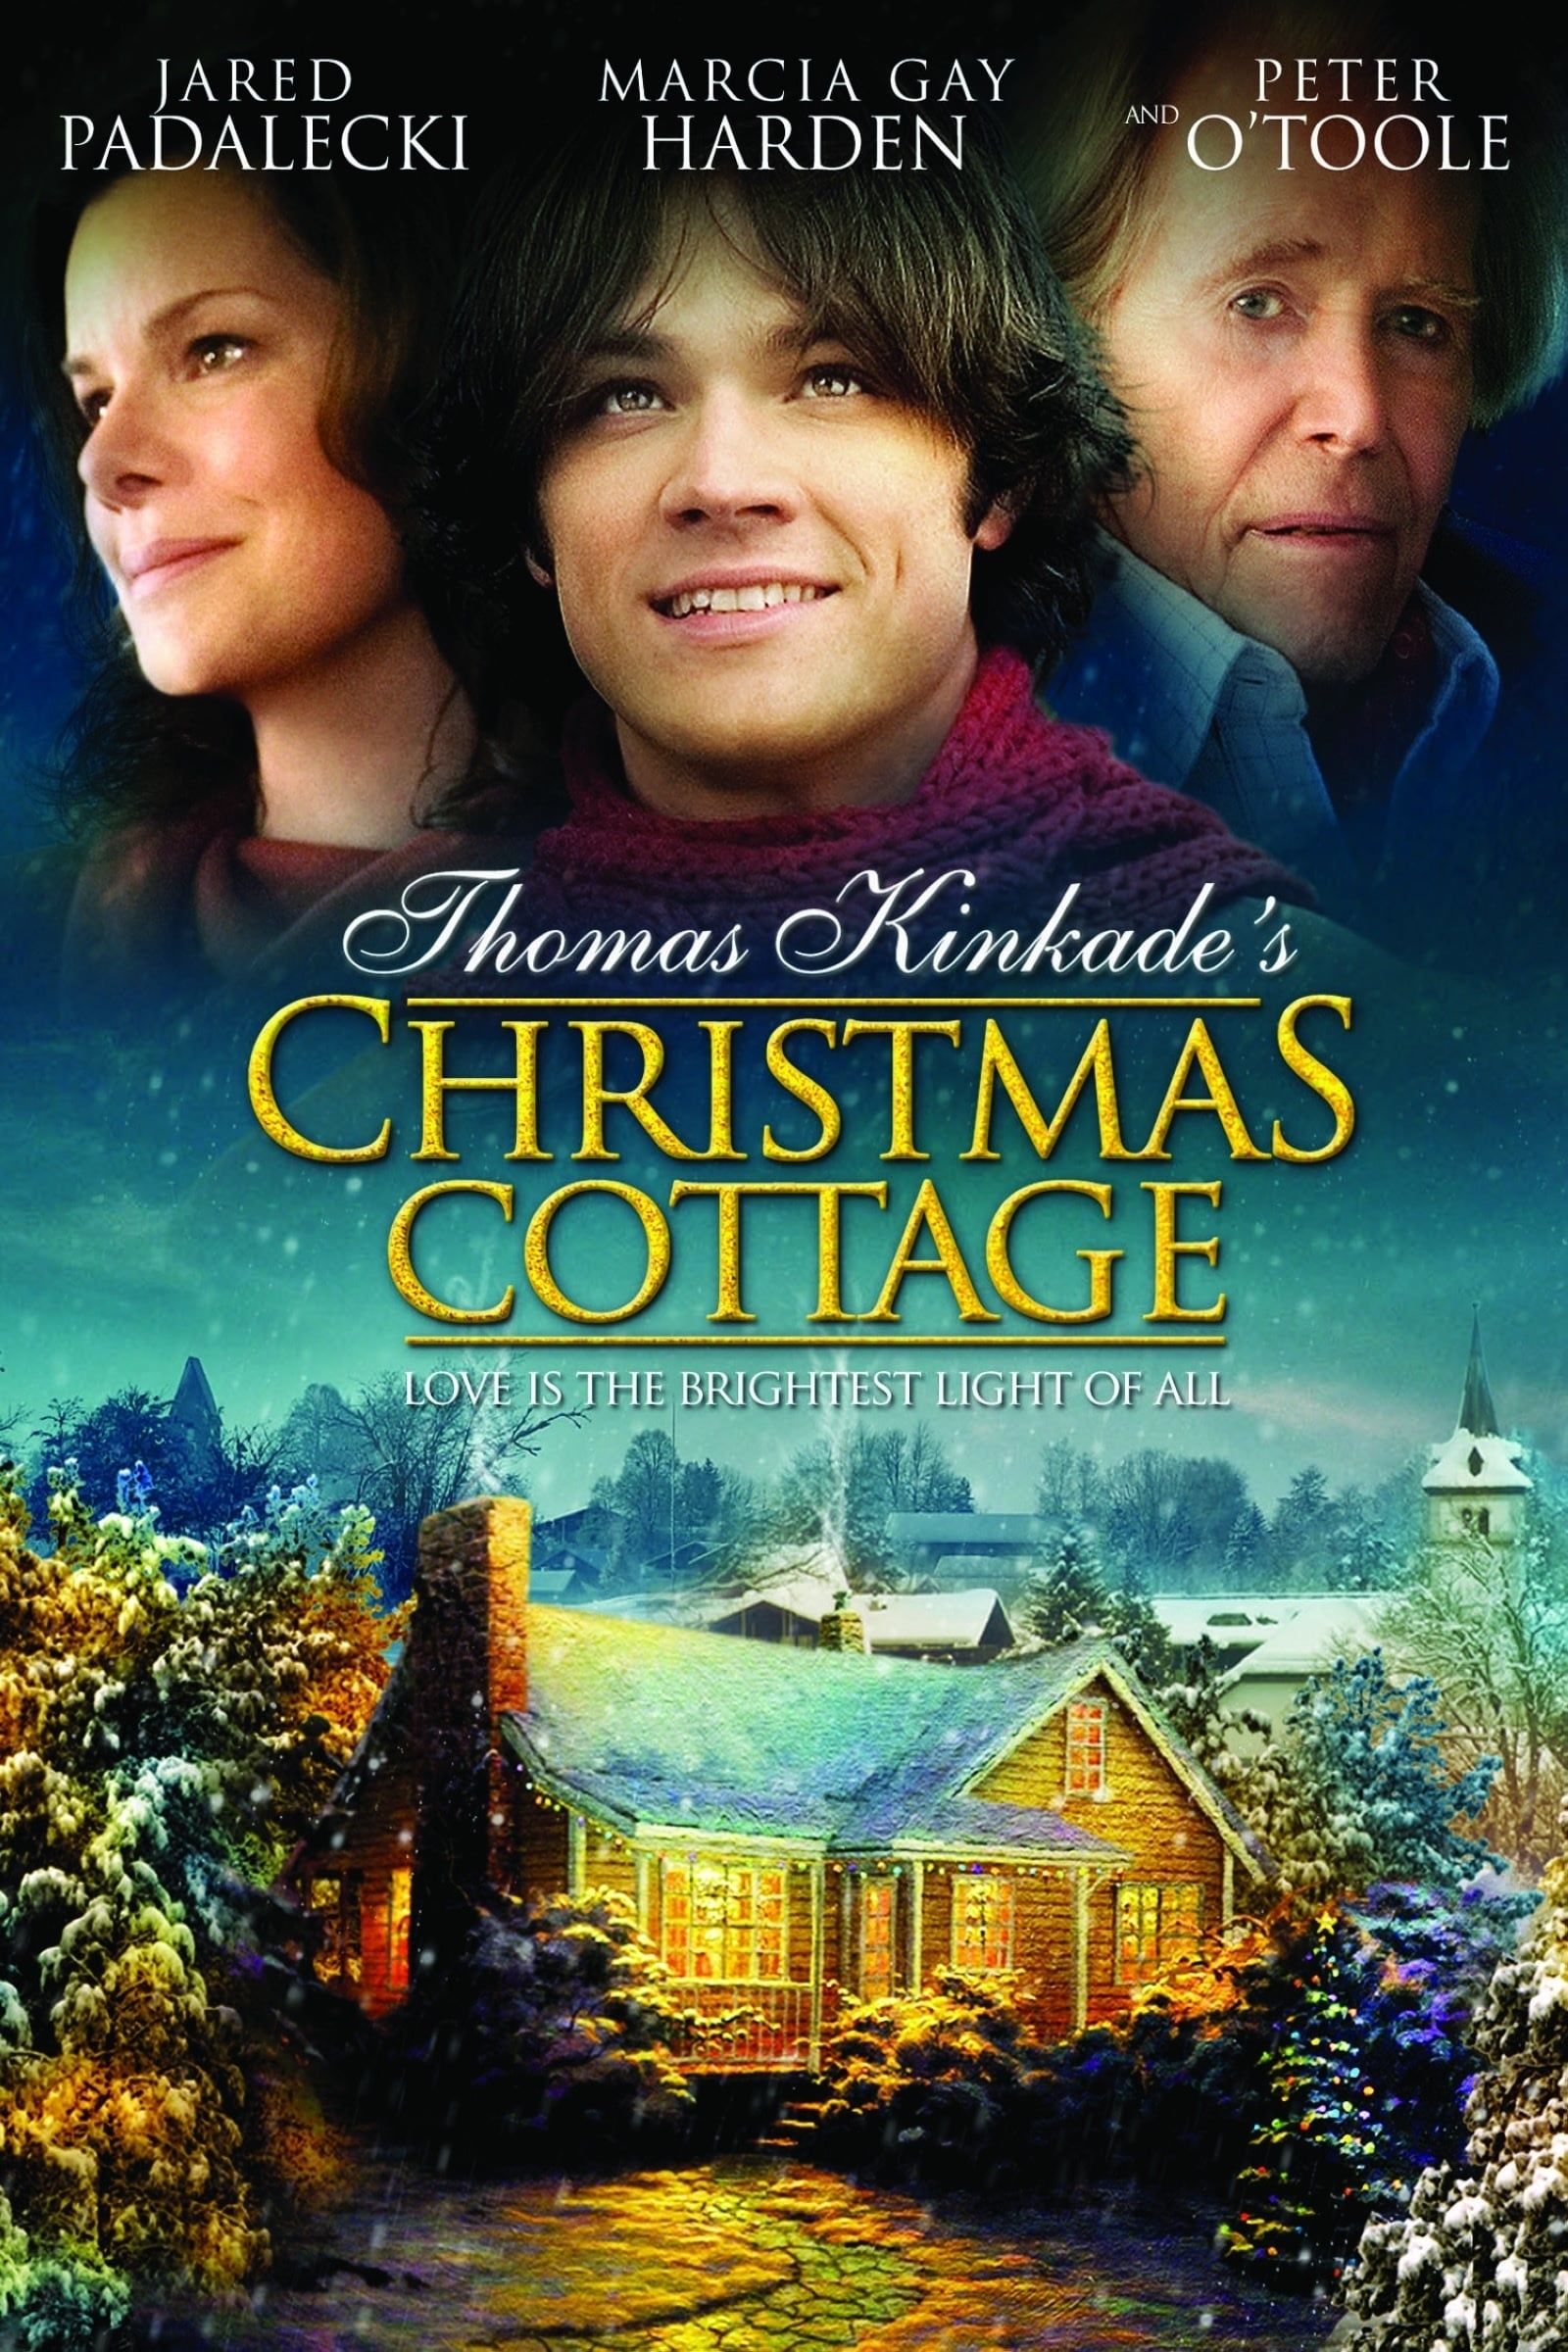 Thomas Kinkade's Home for Christmas